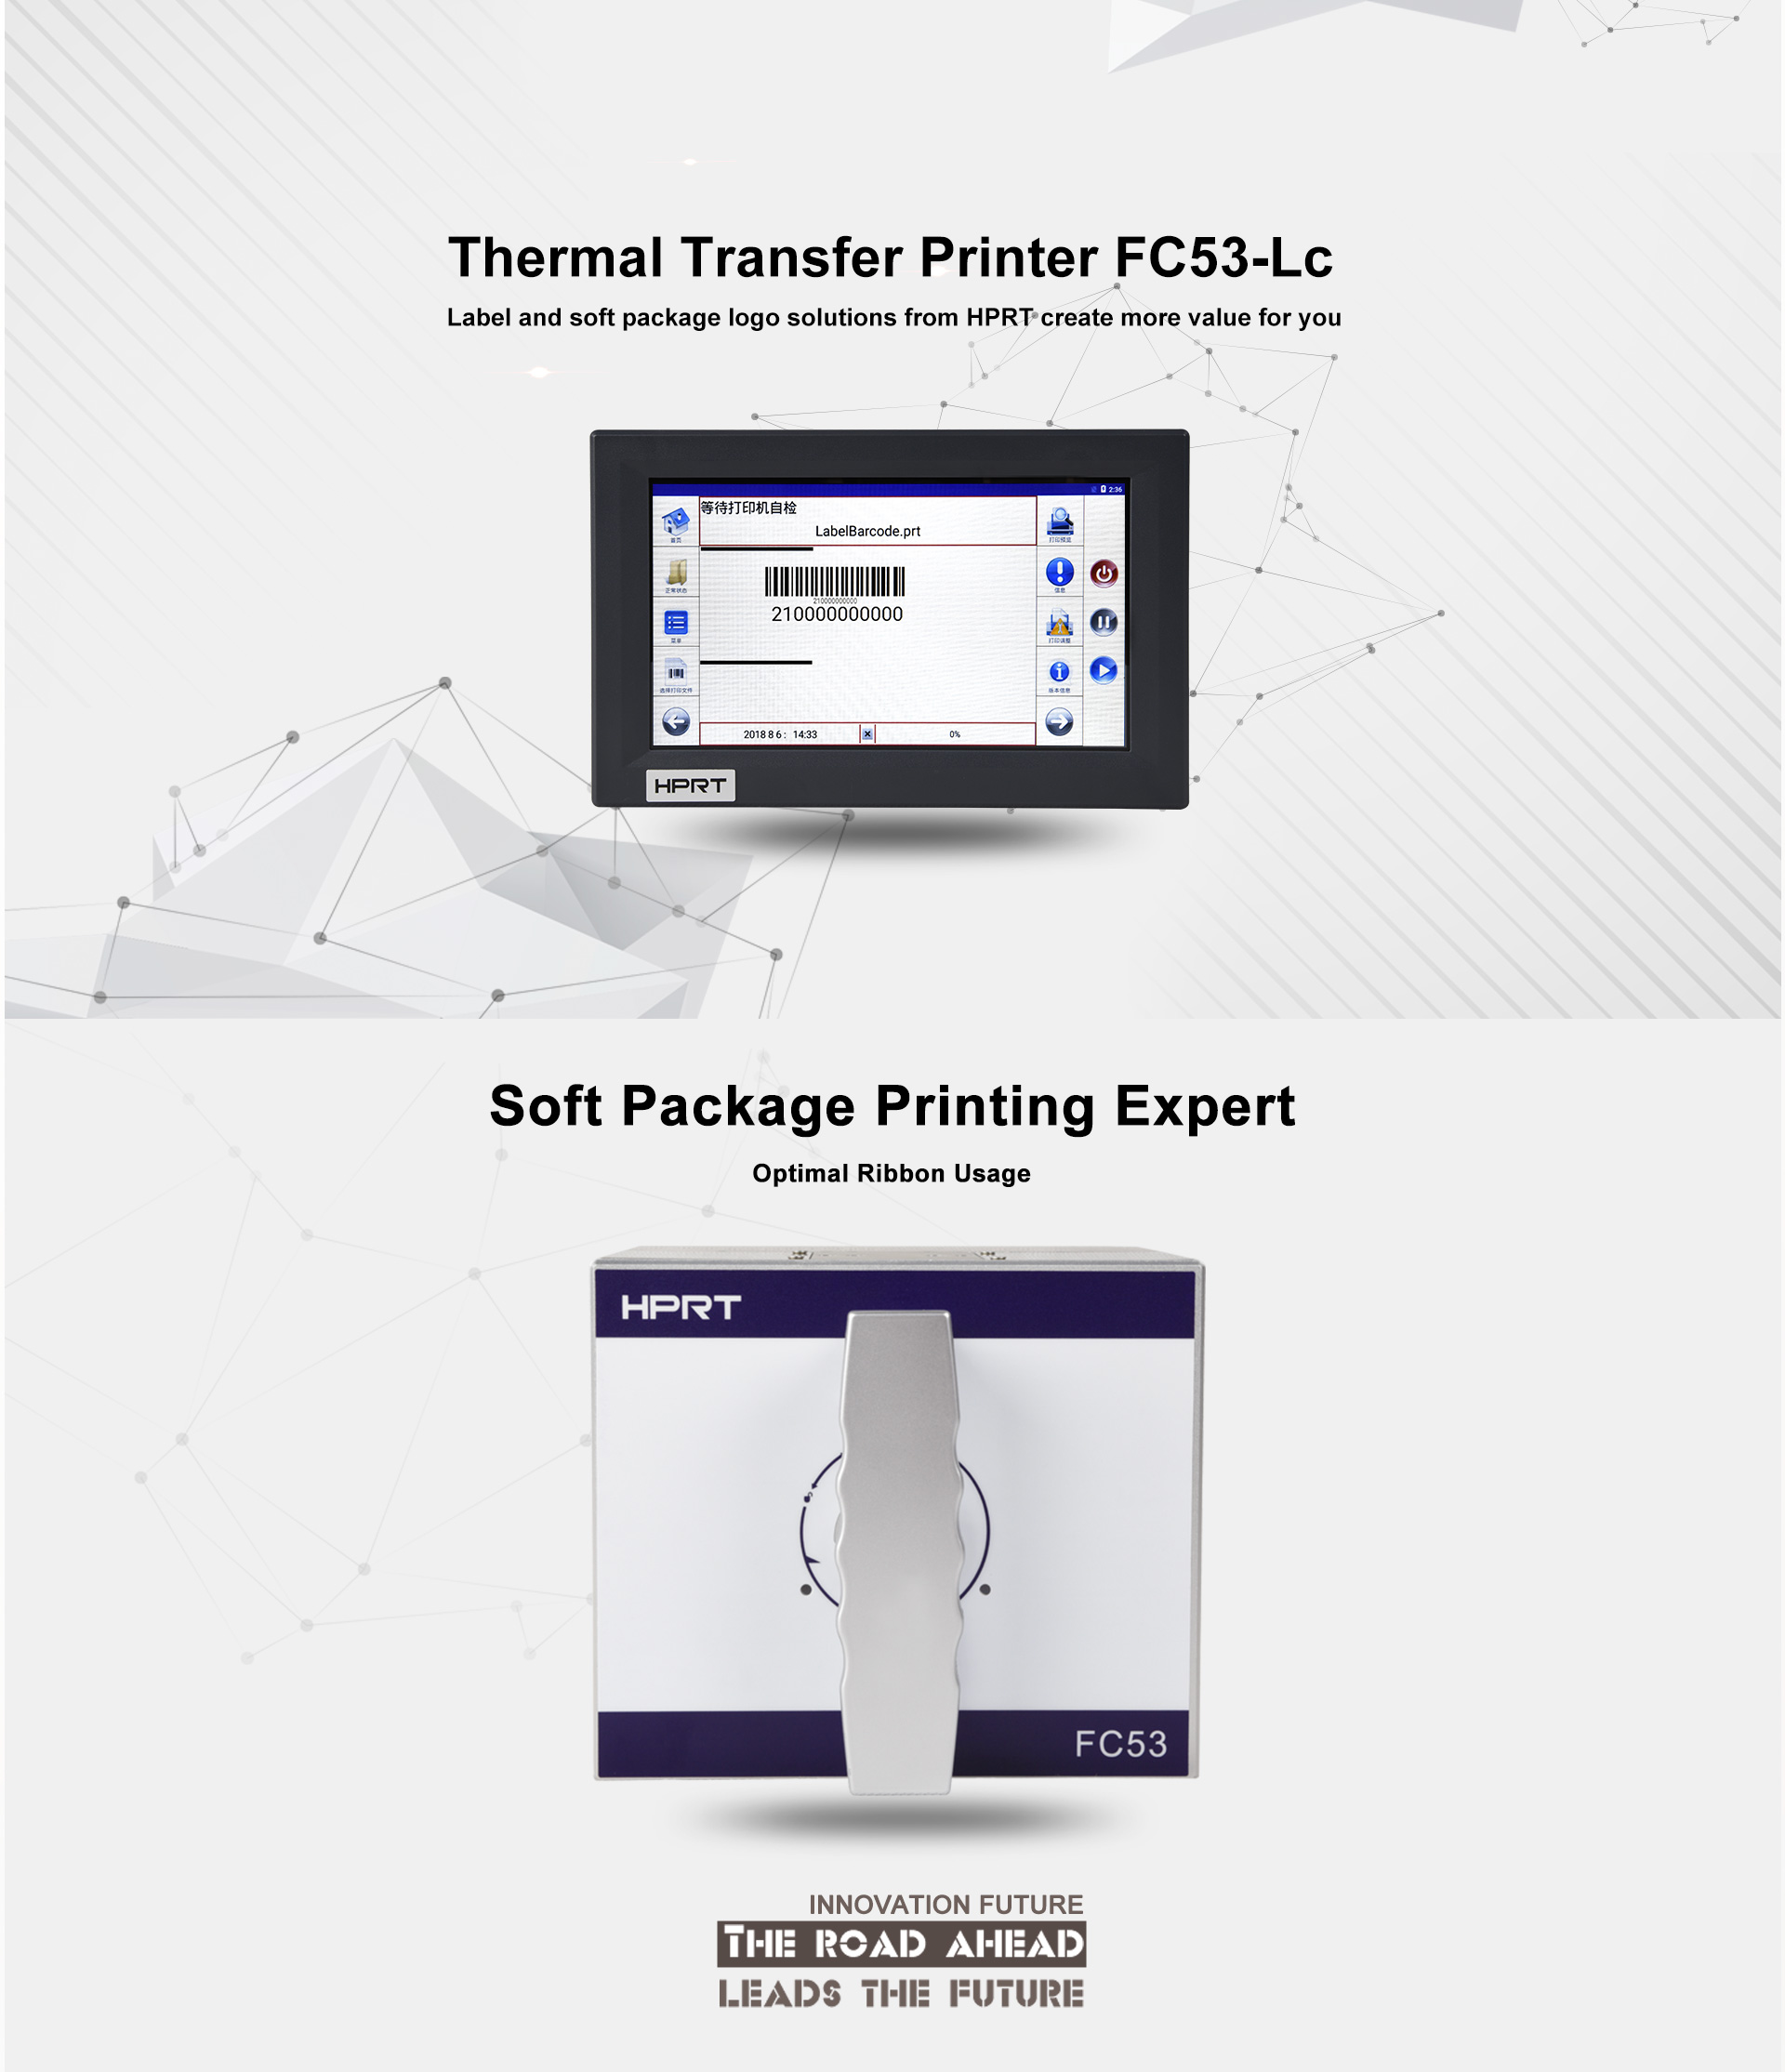 Flexible packaging printing